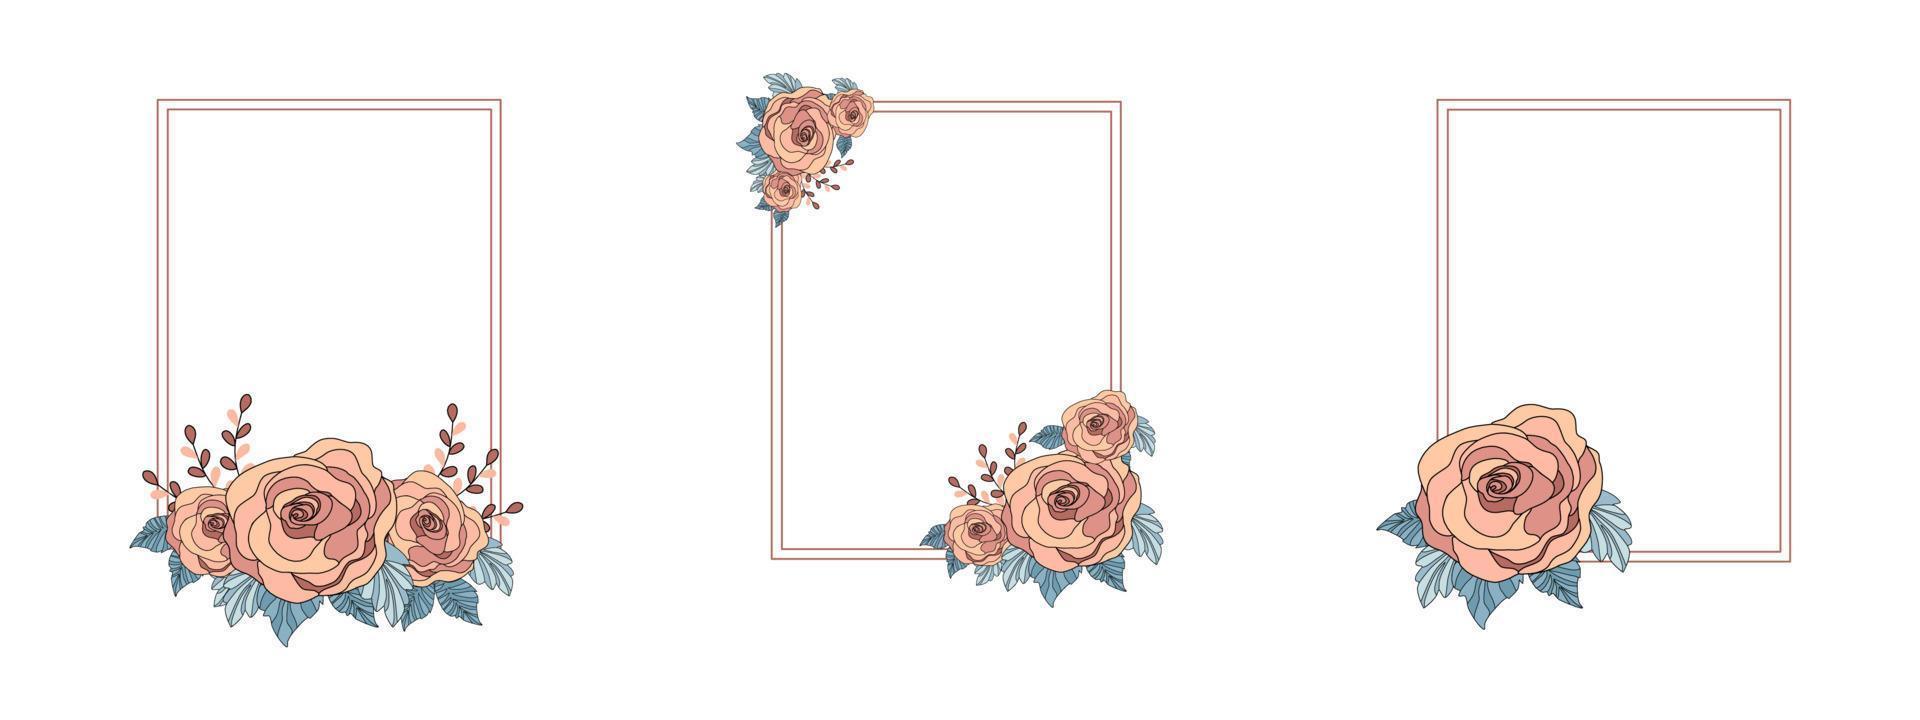 quadro de padrões de rosas vintage conjunto fundo branco para decorar cartões, casamentos, dia dos namorados, cartões postais, convites, molduras, etc. vetor